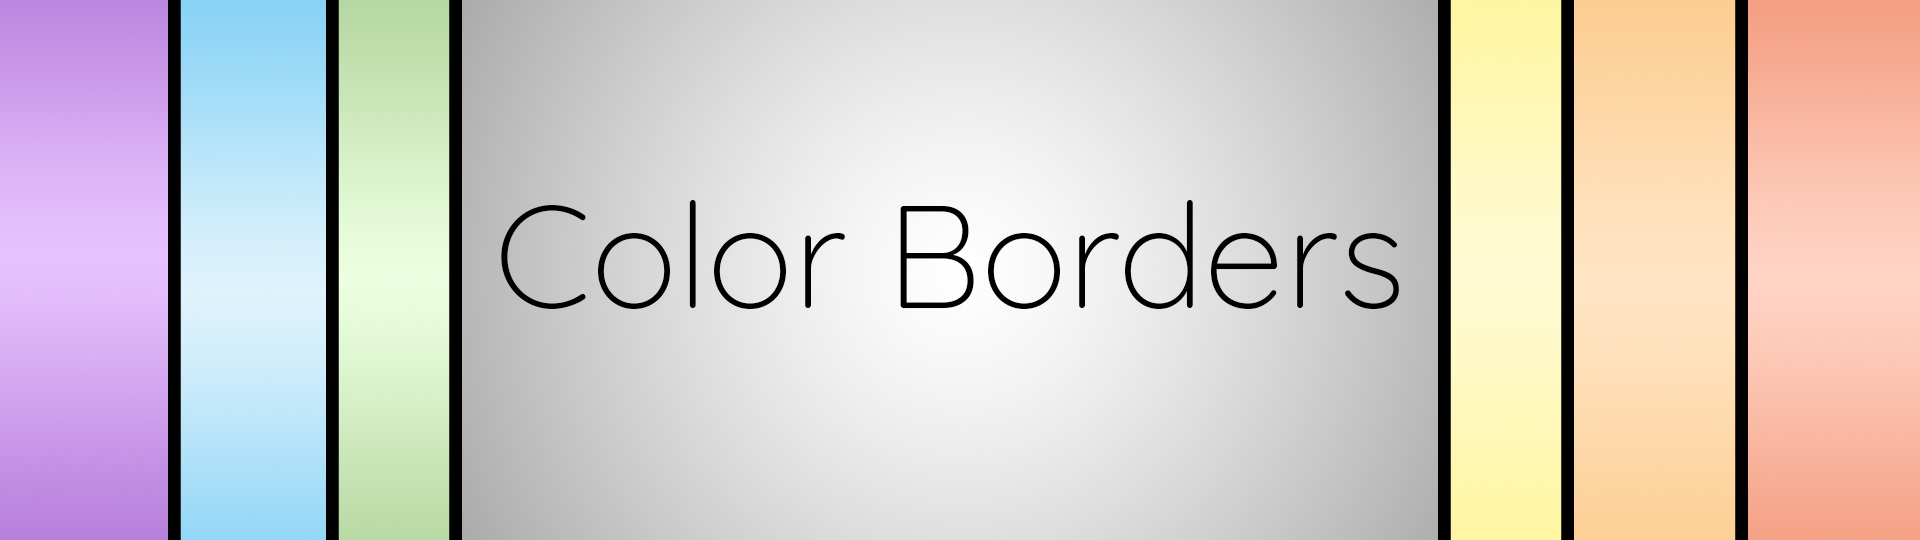 Color Borders